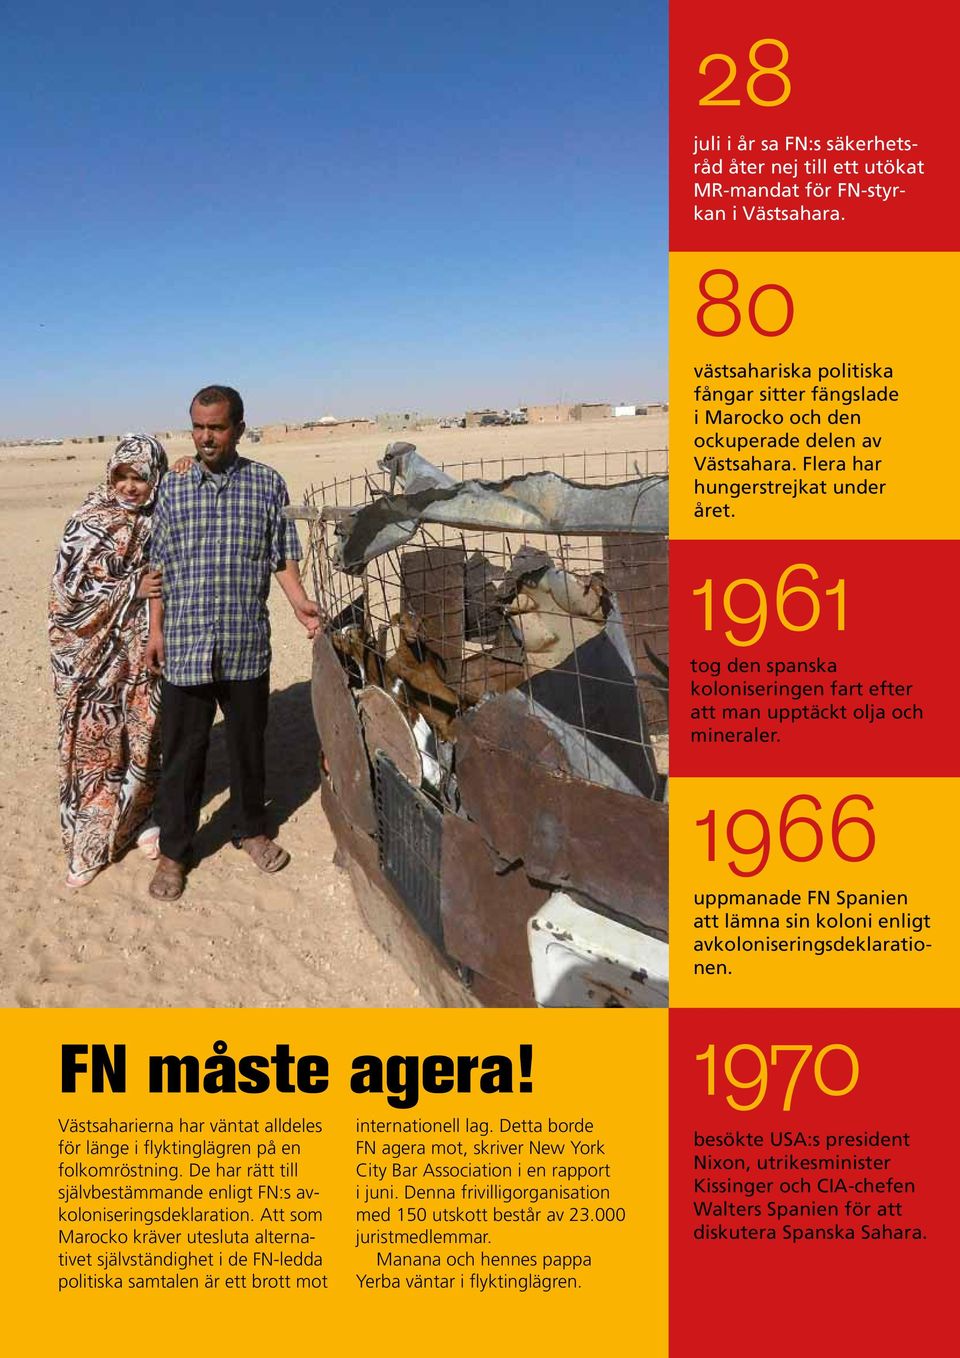 1966 uppmanade FN Spanien att lämna sin koloni enligt avkoloniseringsdeklarationen. FN måste agera! 1970 Västsaharierna har väntat alldeles för länge i flyktinglägren på en folkomröstning.